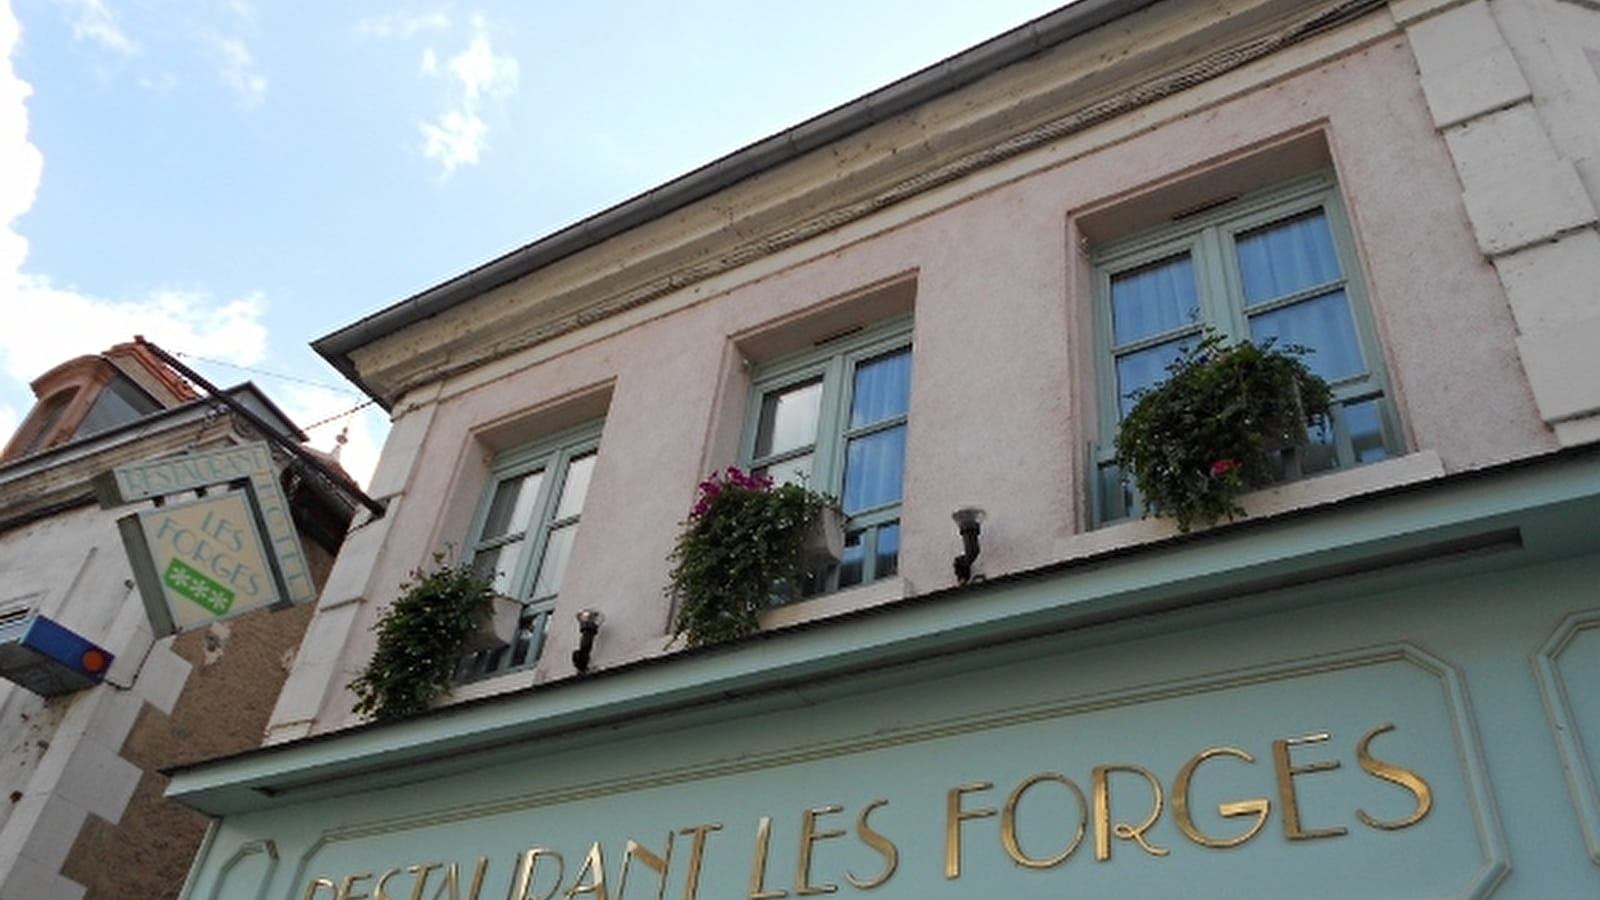 Restaurant Les Forges